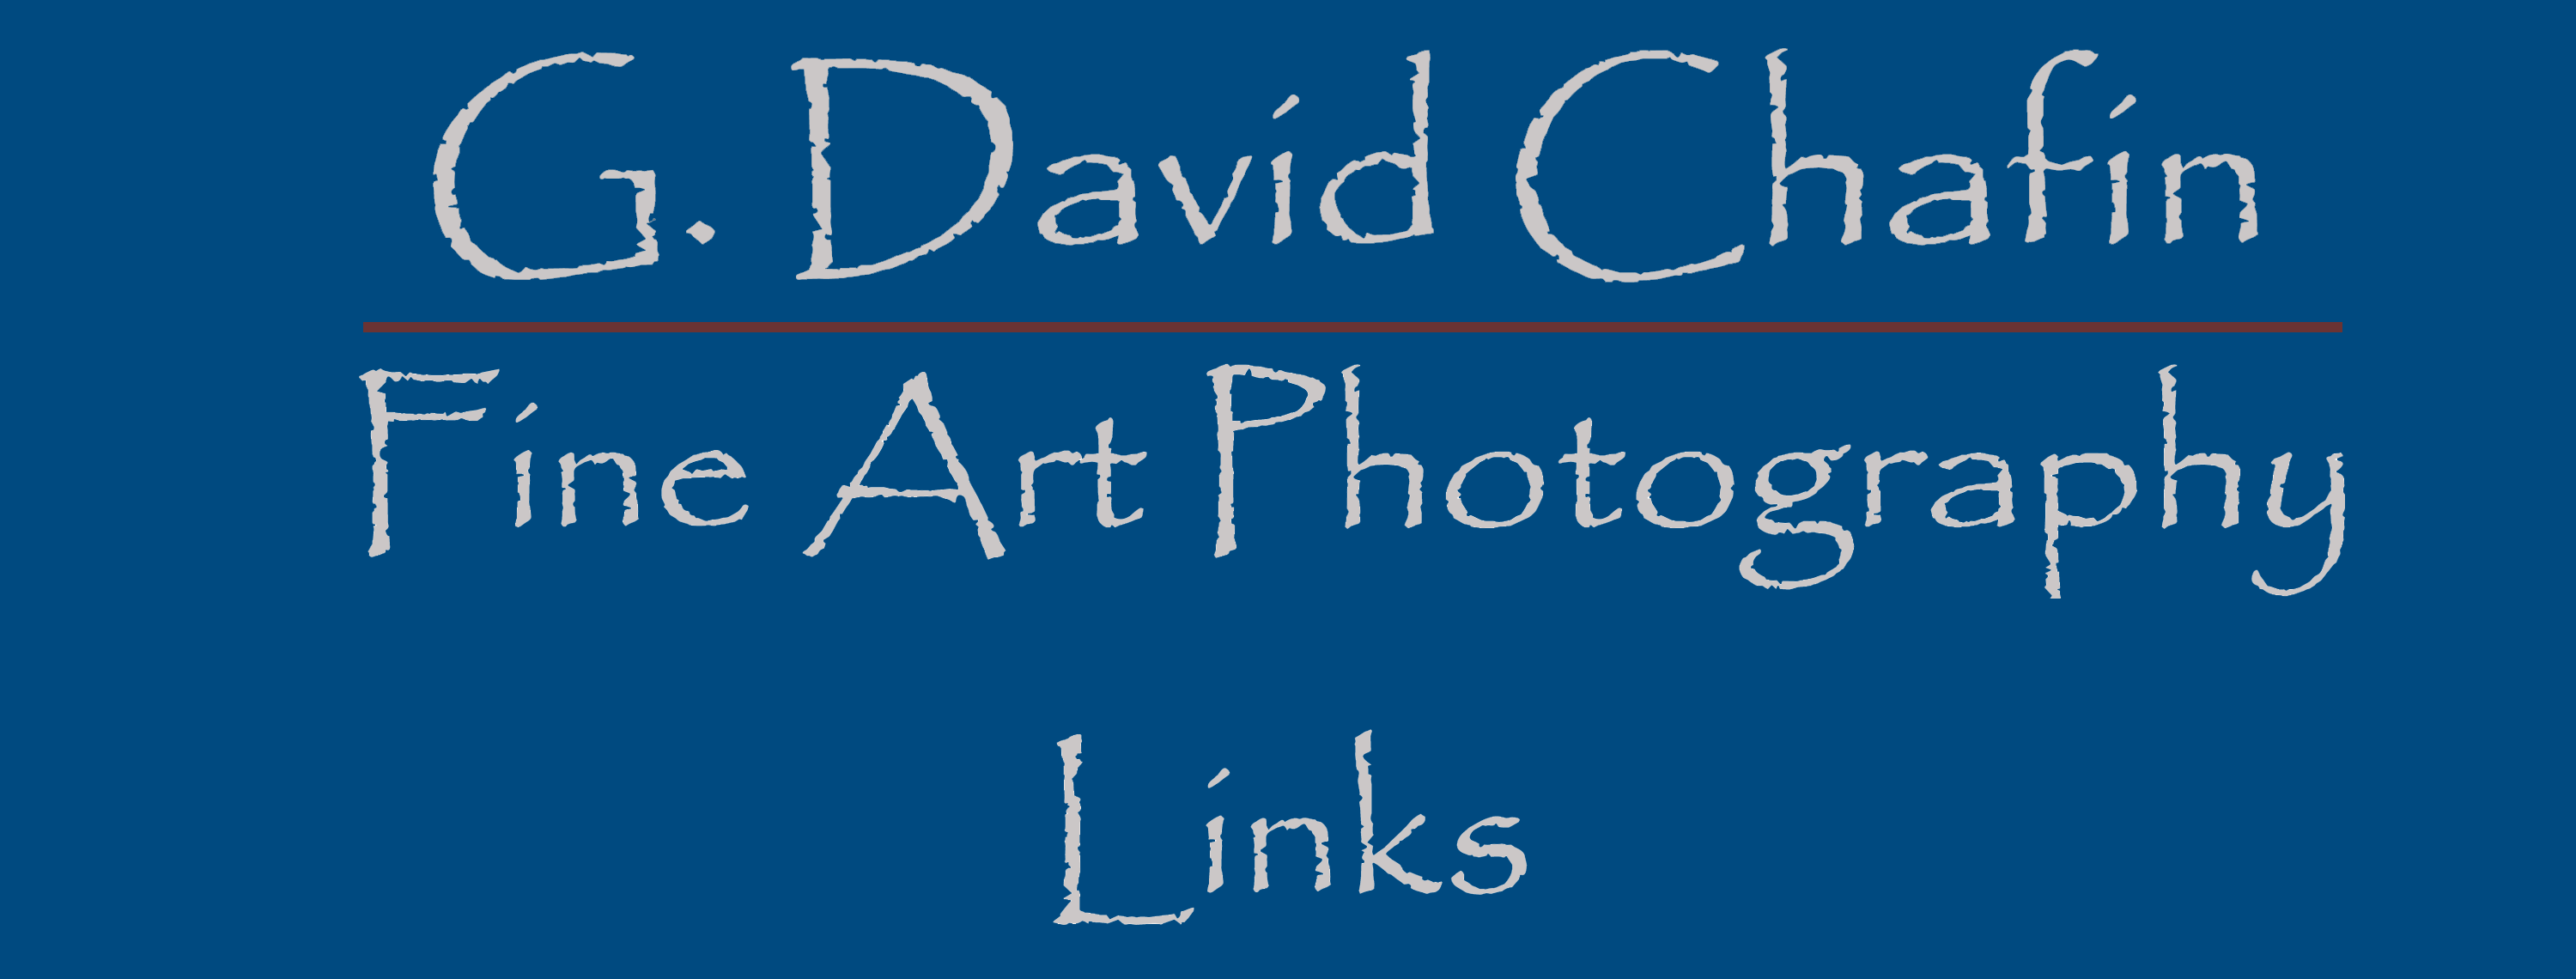 G. David Chafin Fine Art Photography